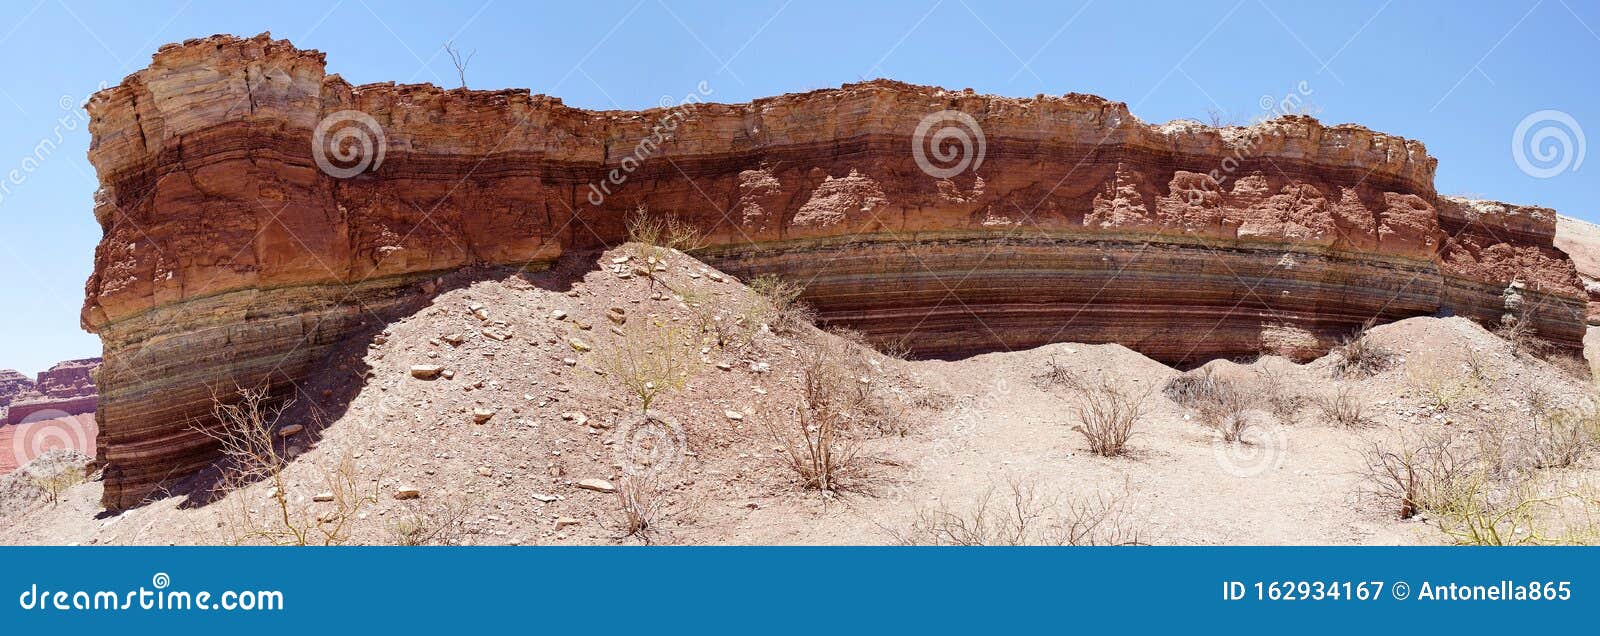 quebrada de las conchas in the calchaqui valley, argentina